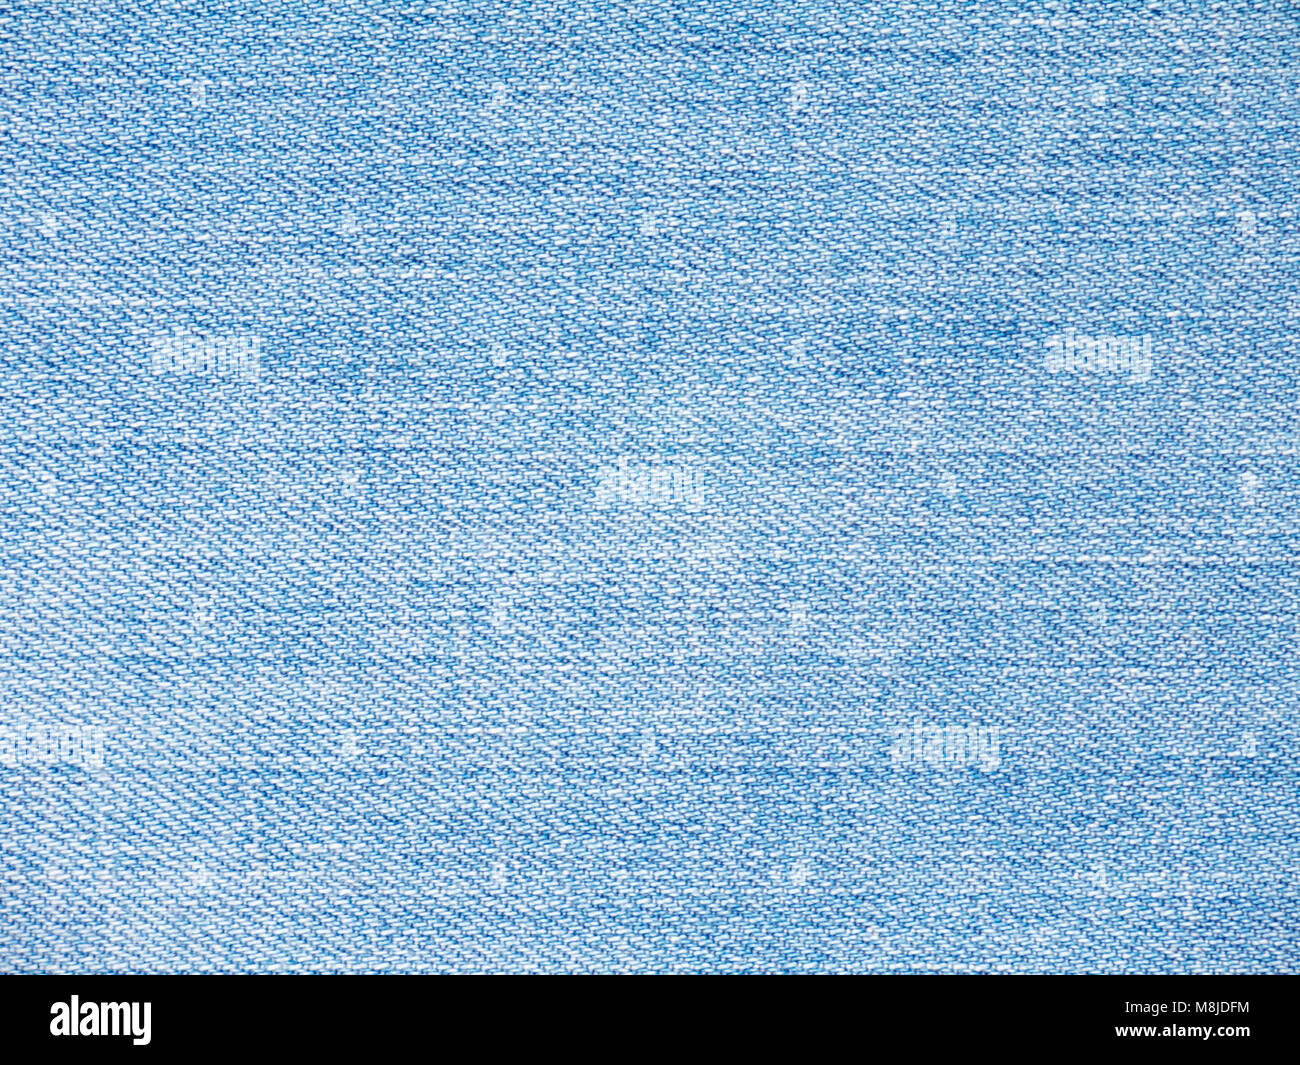 Luce blu lavato sbiadito di tessuto denim texture swatch Foto Stock